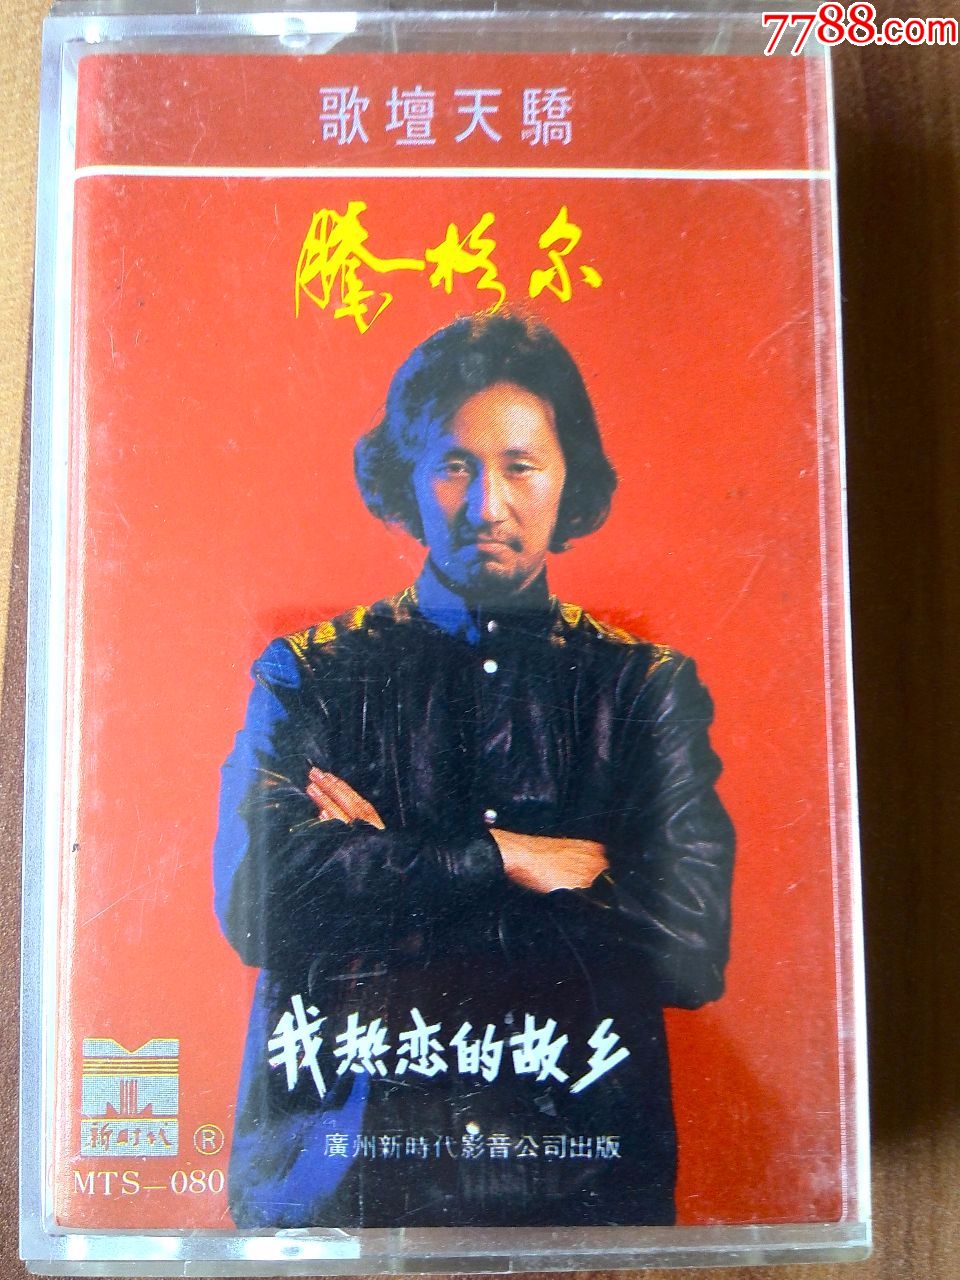 少见磁带,腾格尔早期专辑《我热恋的故乡》广州新时代影音出品,mts